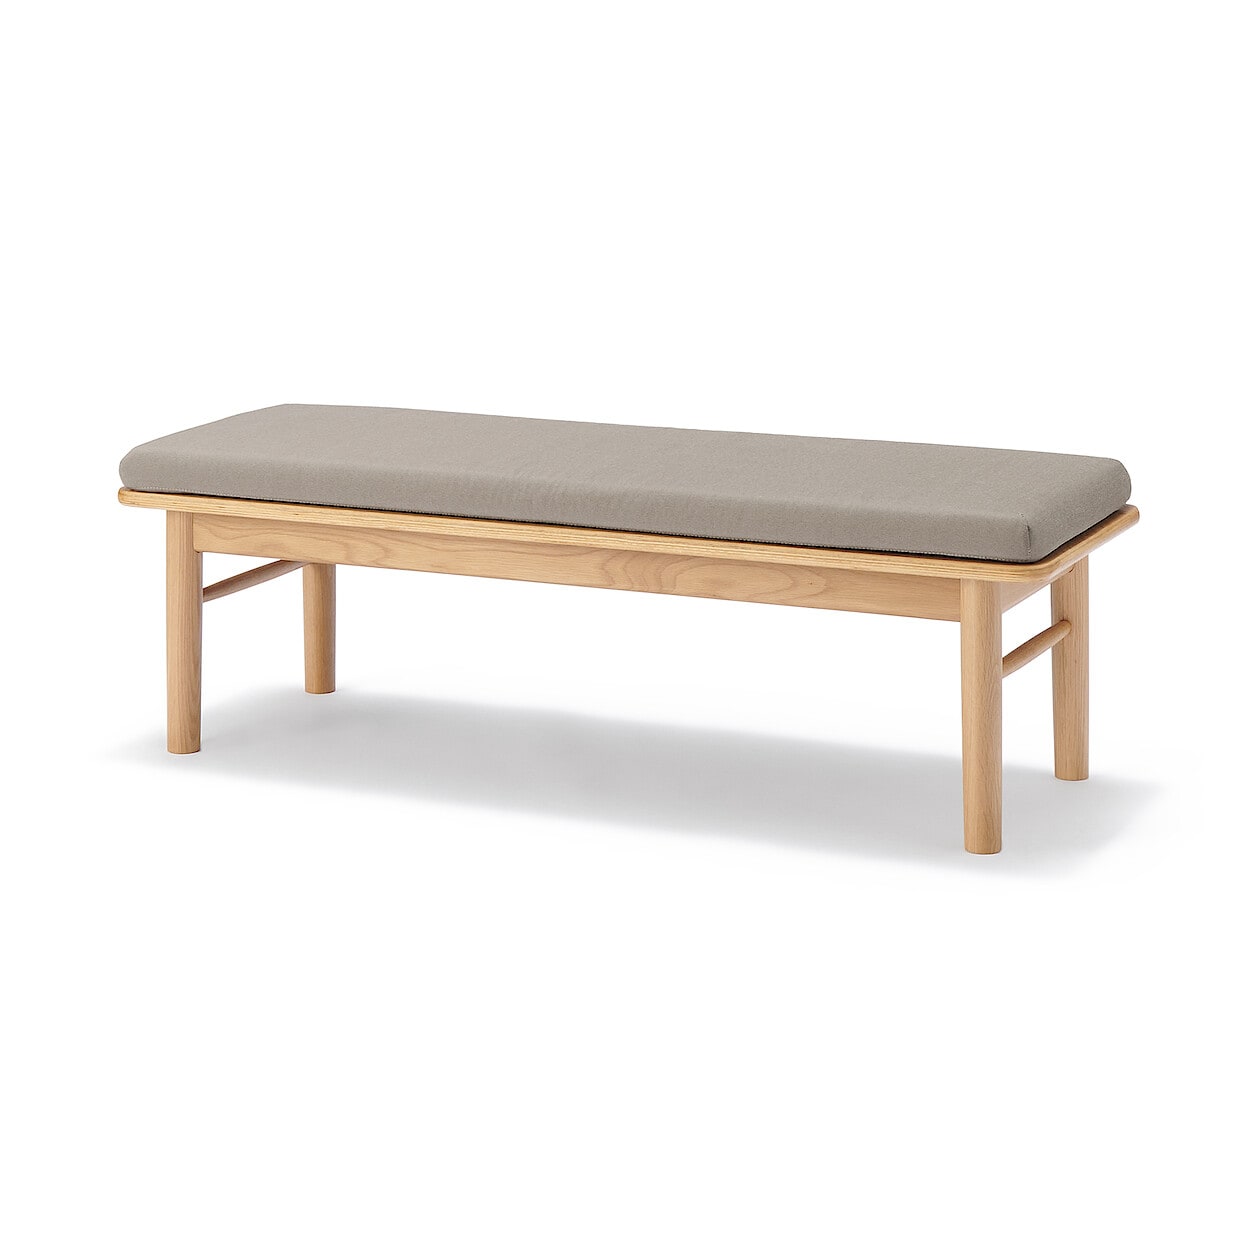 1 20迄 無印良品 木製サイドテーブルベンチ オーク材 - サイドテーブル